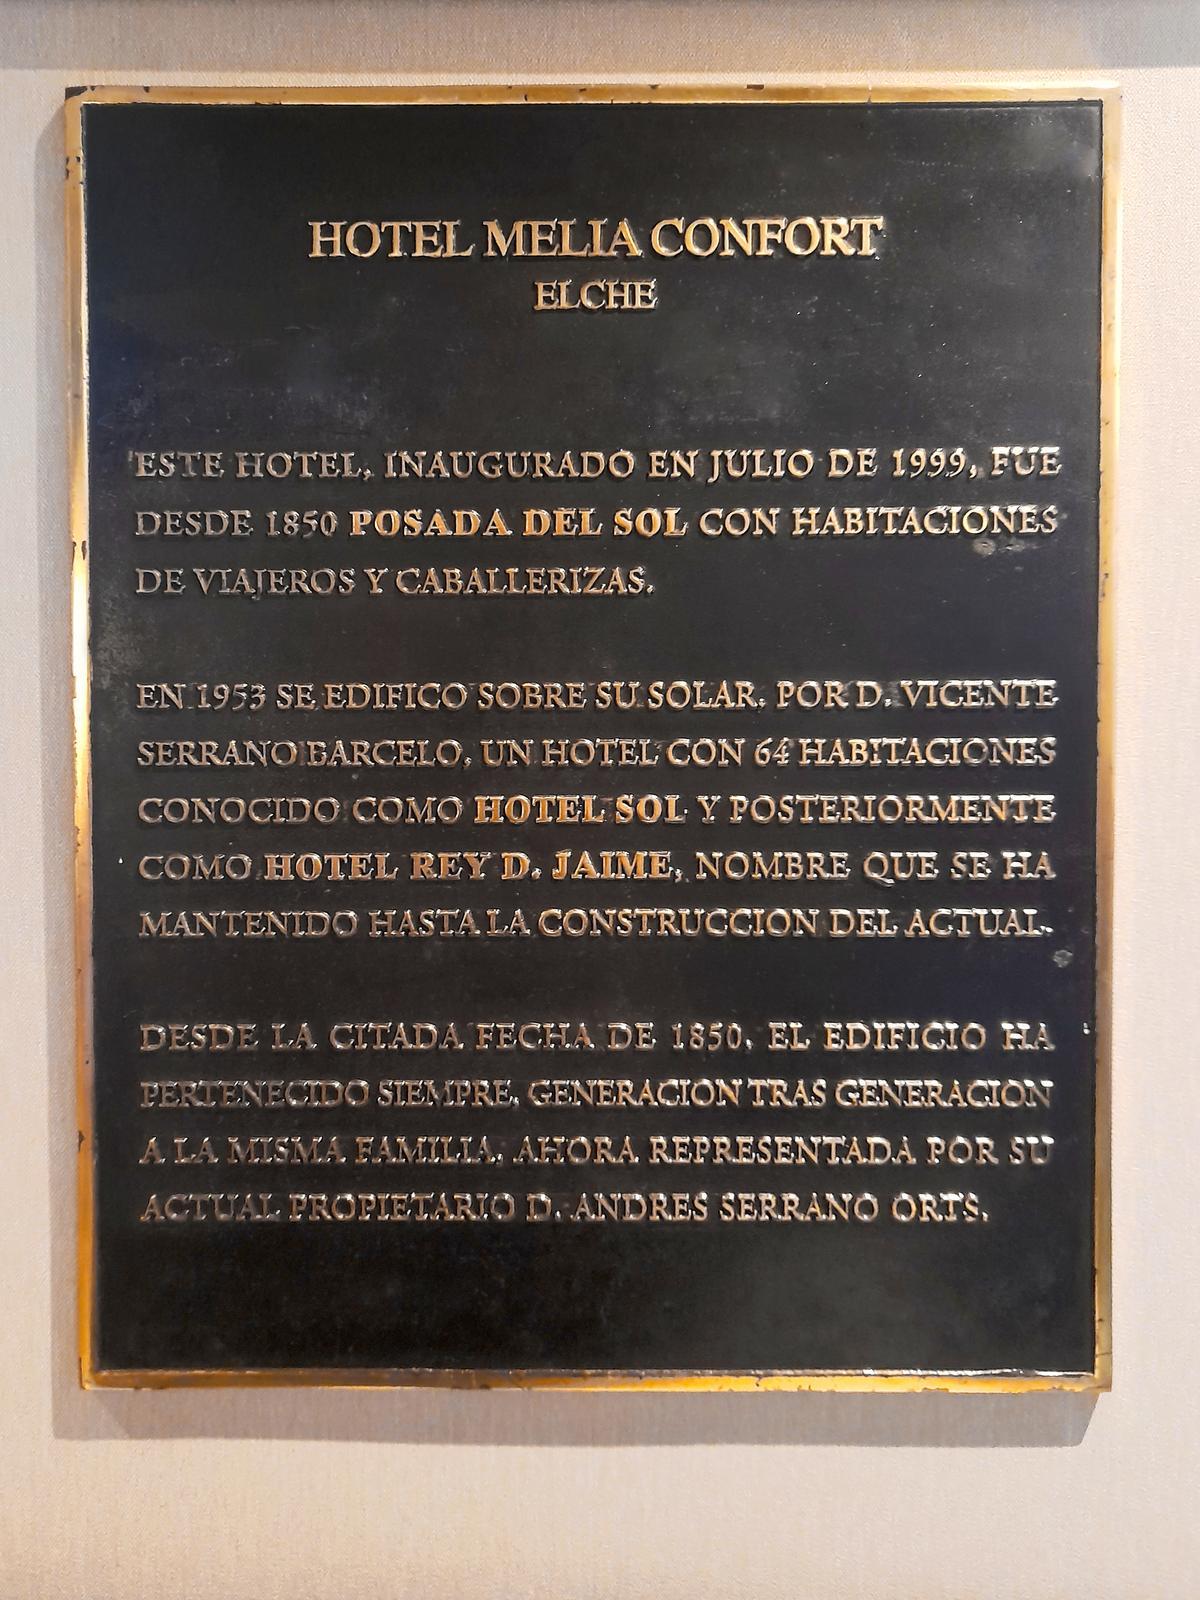 Placa con la historia del hotel que se encuentra en el hall del mismo.